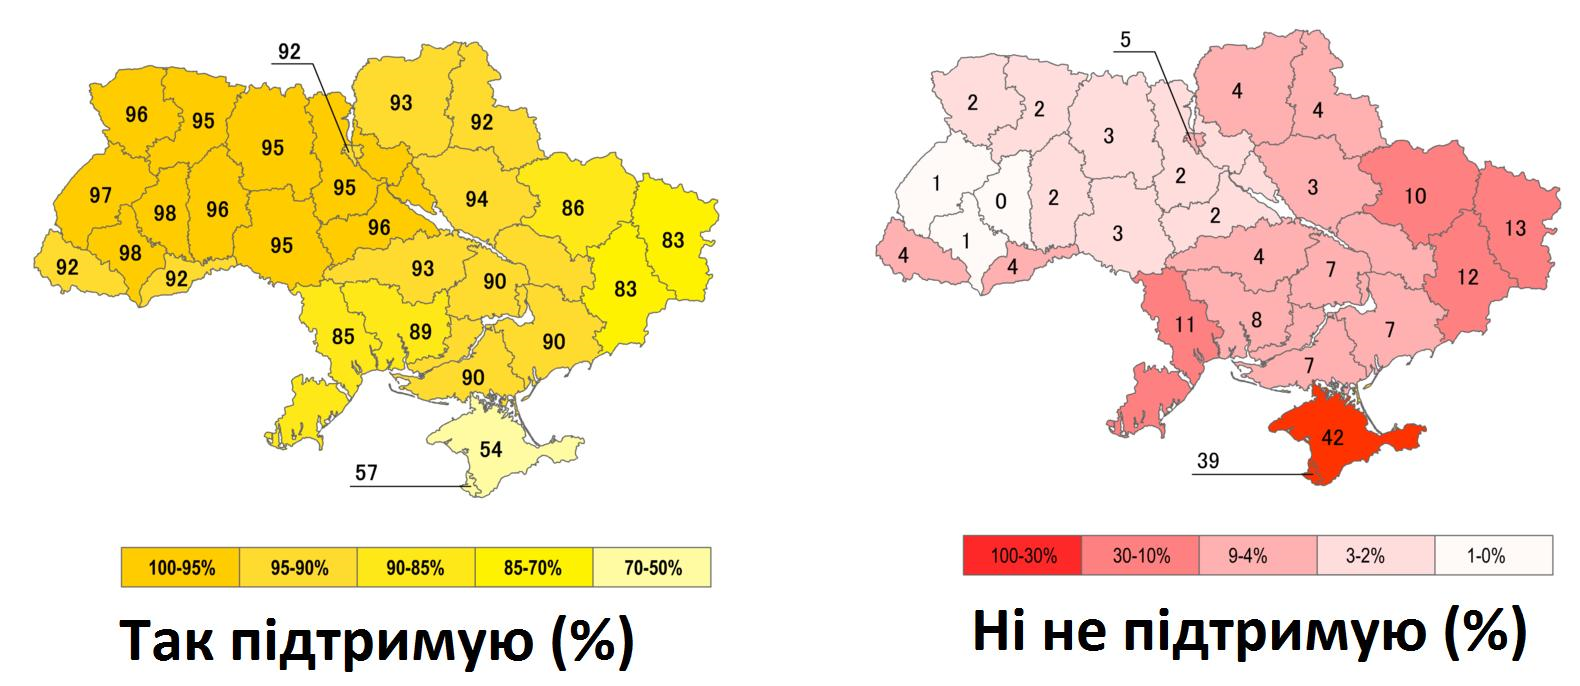 Какой была украина в 1991 году. Карта Украины референдум 1991. Всеукраинский референдум (1991)независимость Украины. Карта Украины 1991 года. Карта референдума 1991 года на Украине.